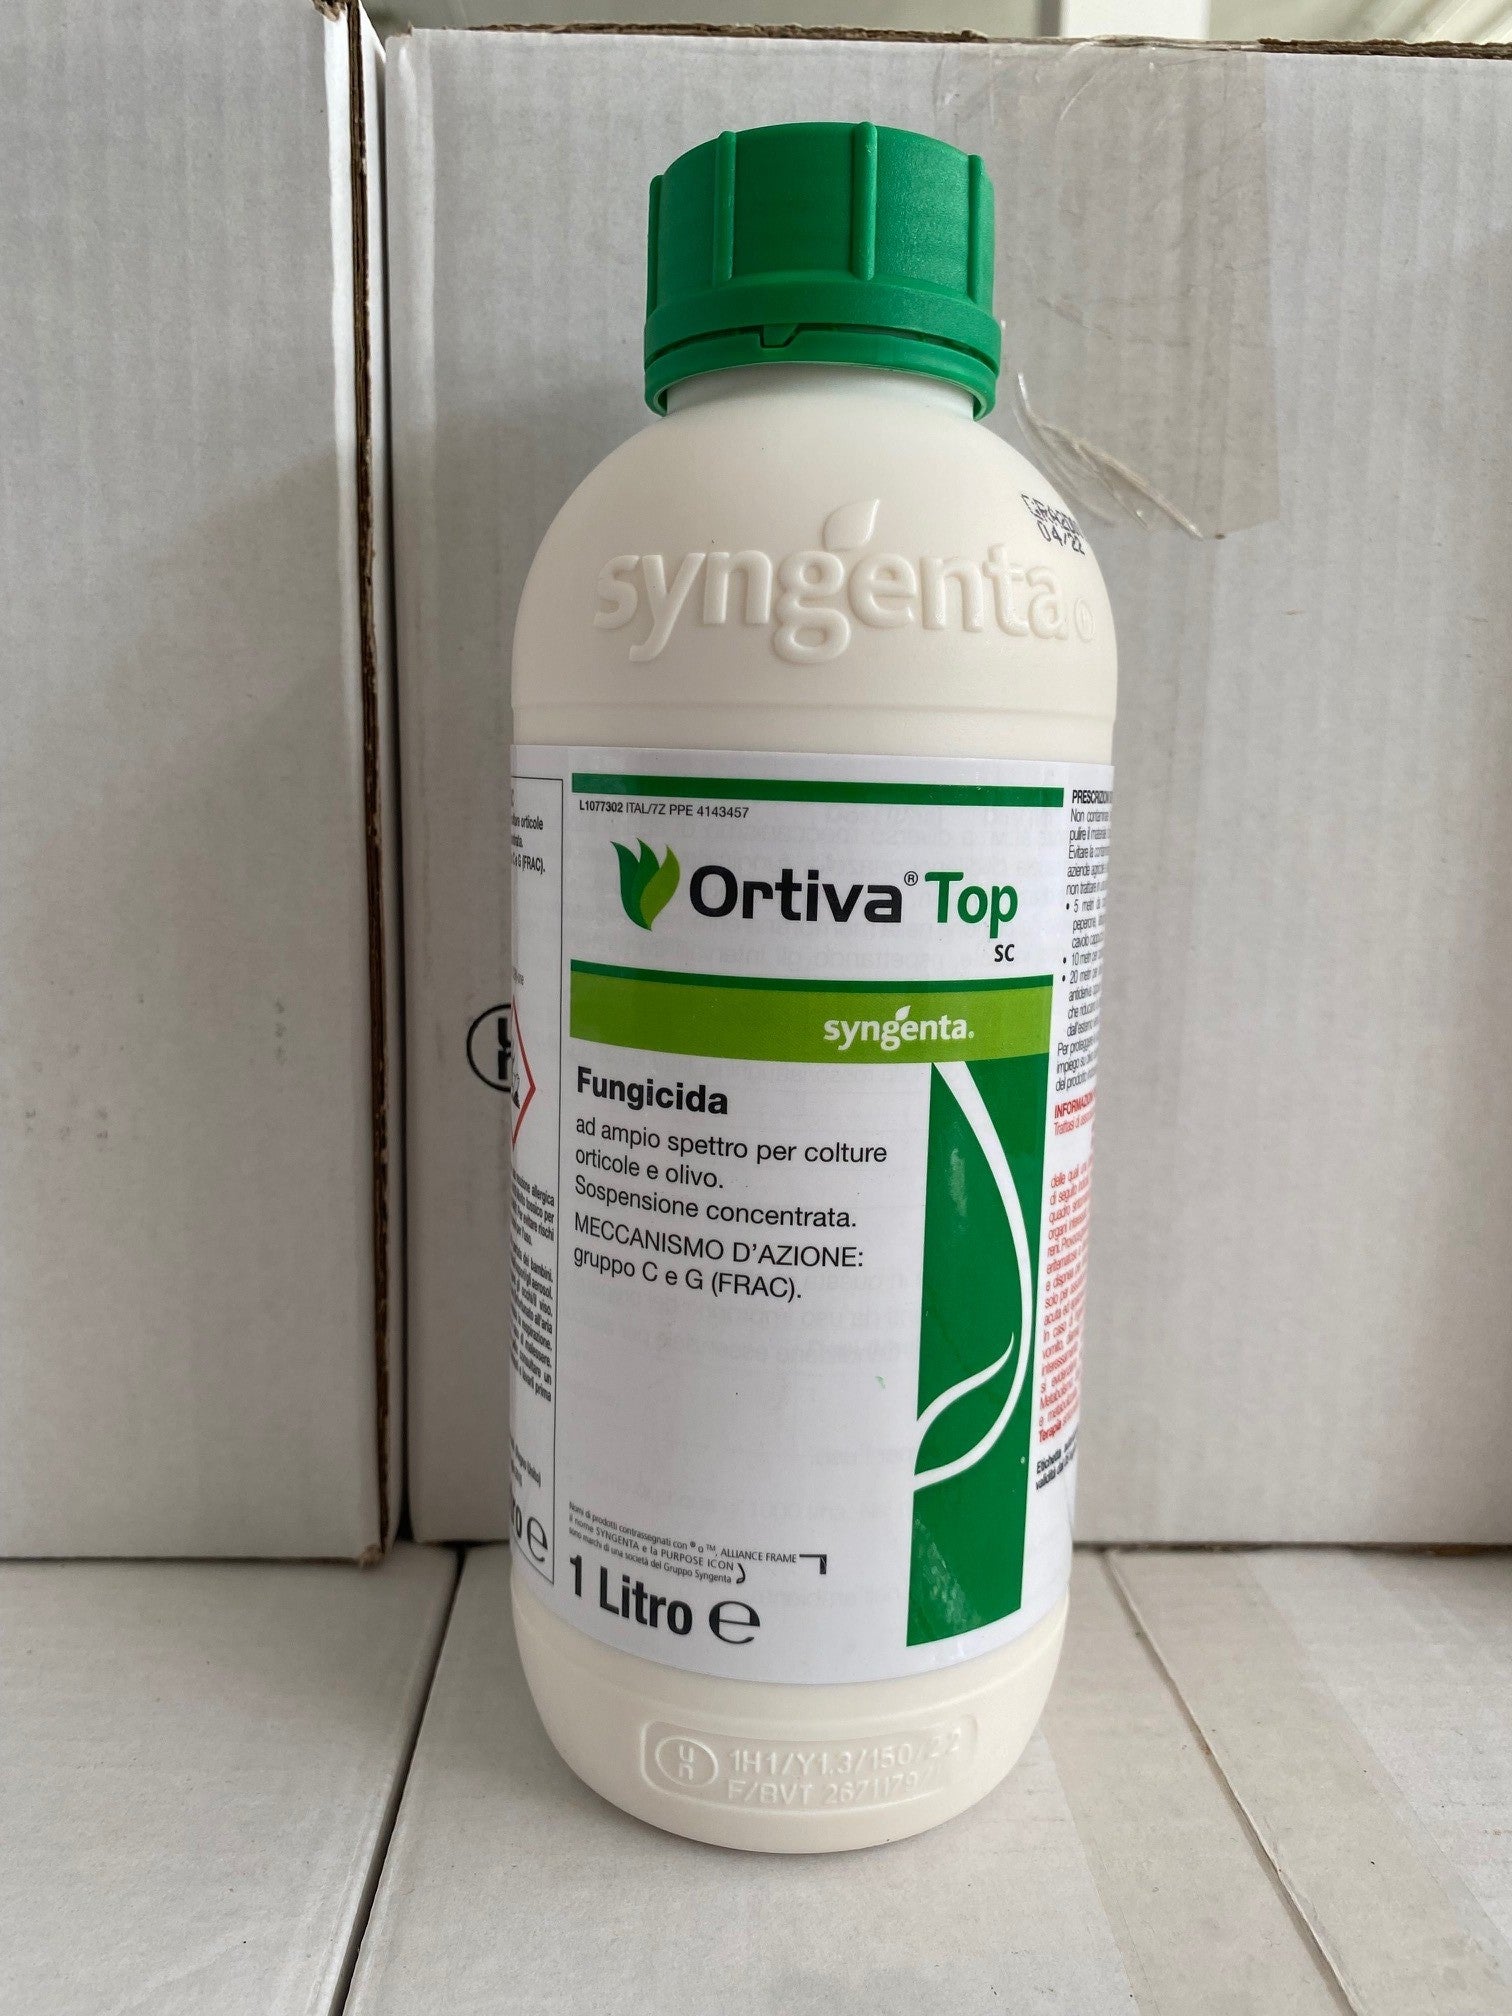 Ortiva top - Fungicida - Azoxystrobin - Difenoconazolo - Alternaria - Peronospora - Orticole